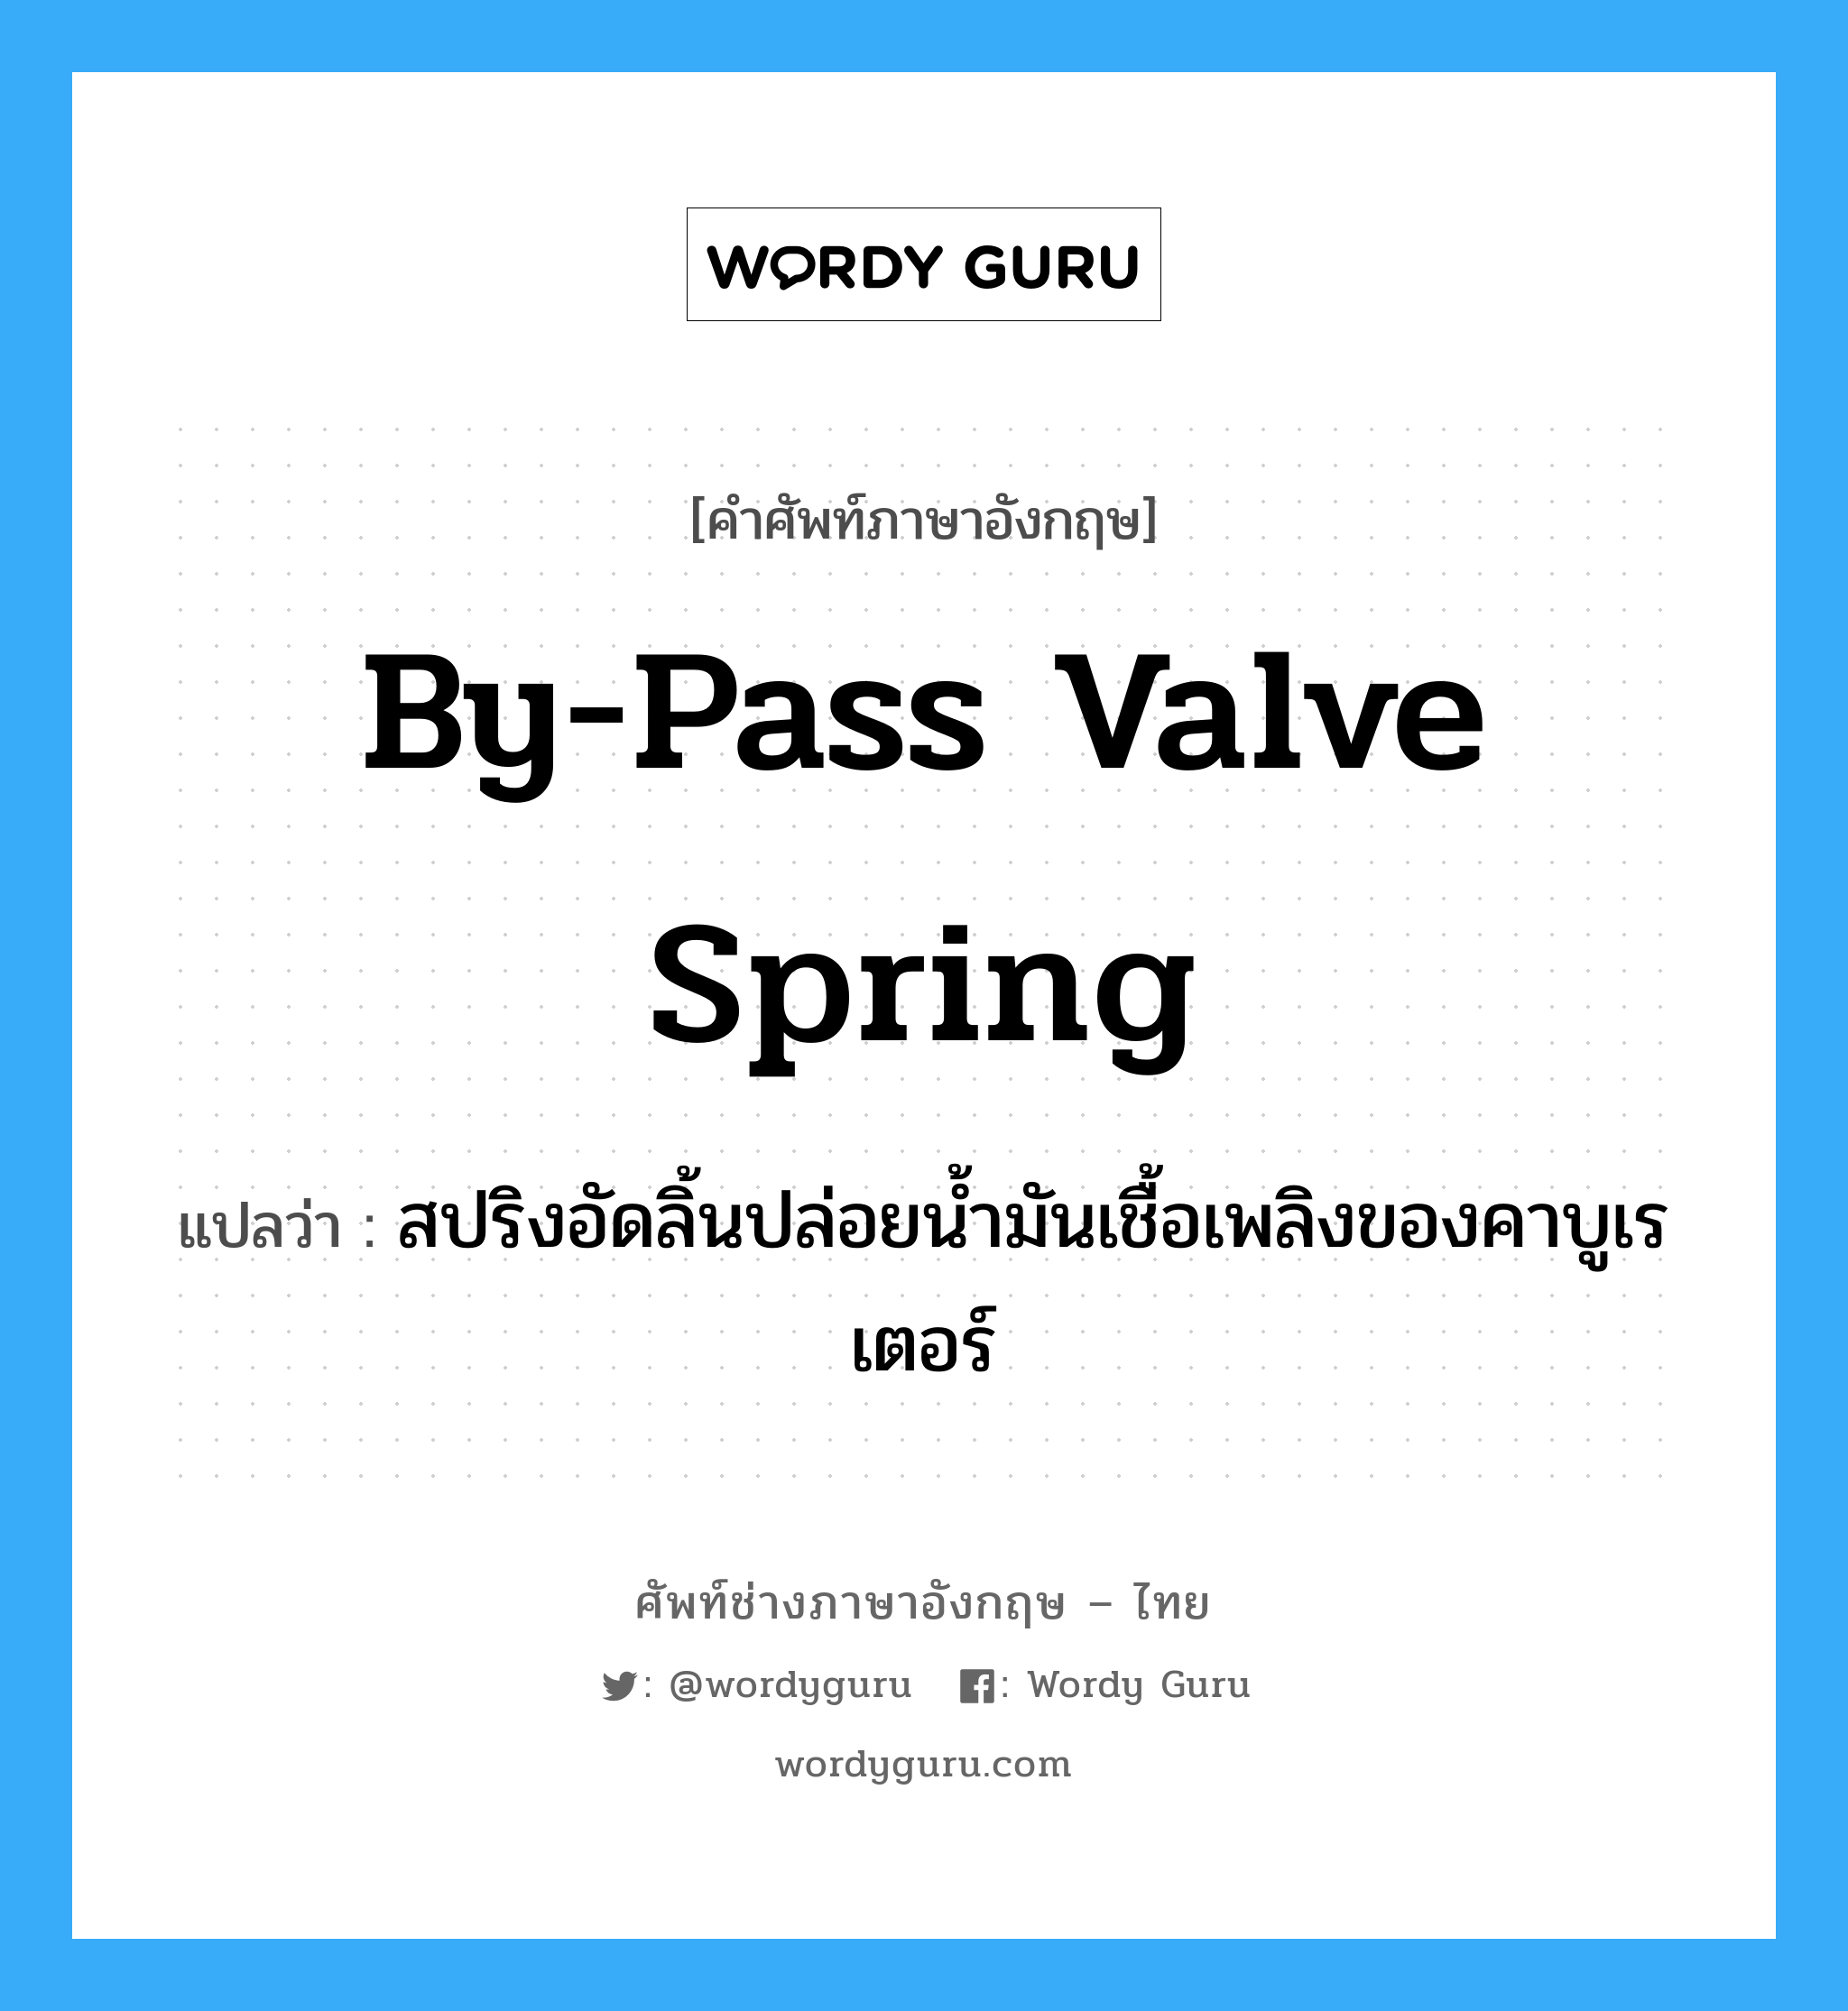 by-pass valve spring แปลว่า?, คำศัพท์ช่างภาษาอังกฤษ - ไทย by-pass valve spring คำศัพท์ภาษาอังกฤษ by-pass valve spring แปลว่า สปริงอัดลิ้นปล่อยน้ำมันเชื้อเพลิงของคาบูเรเตอร์